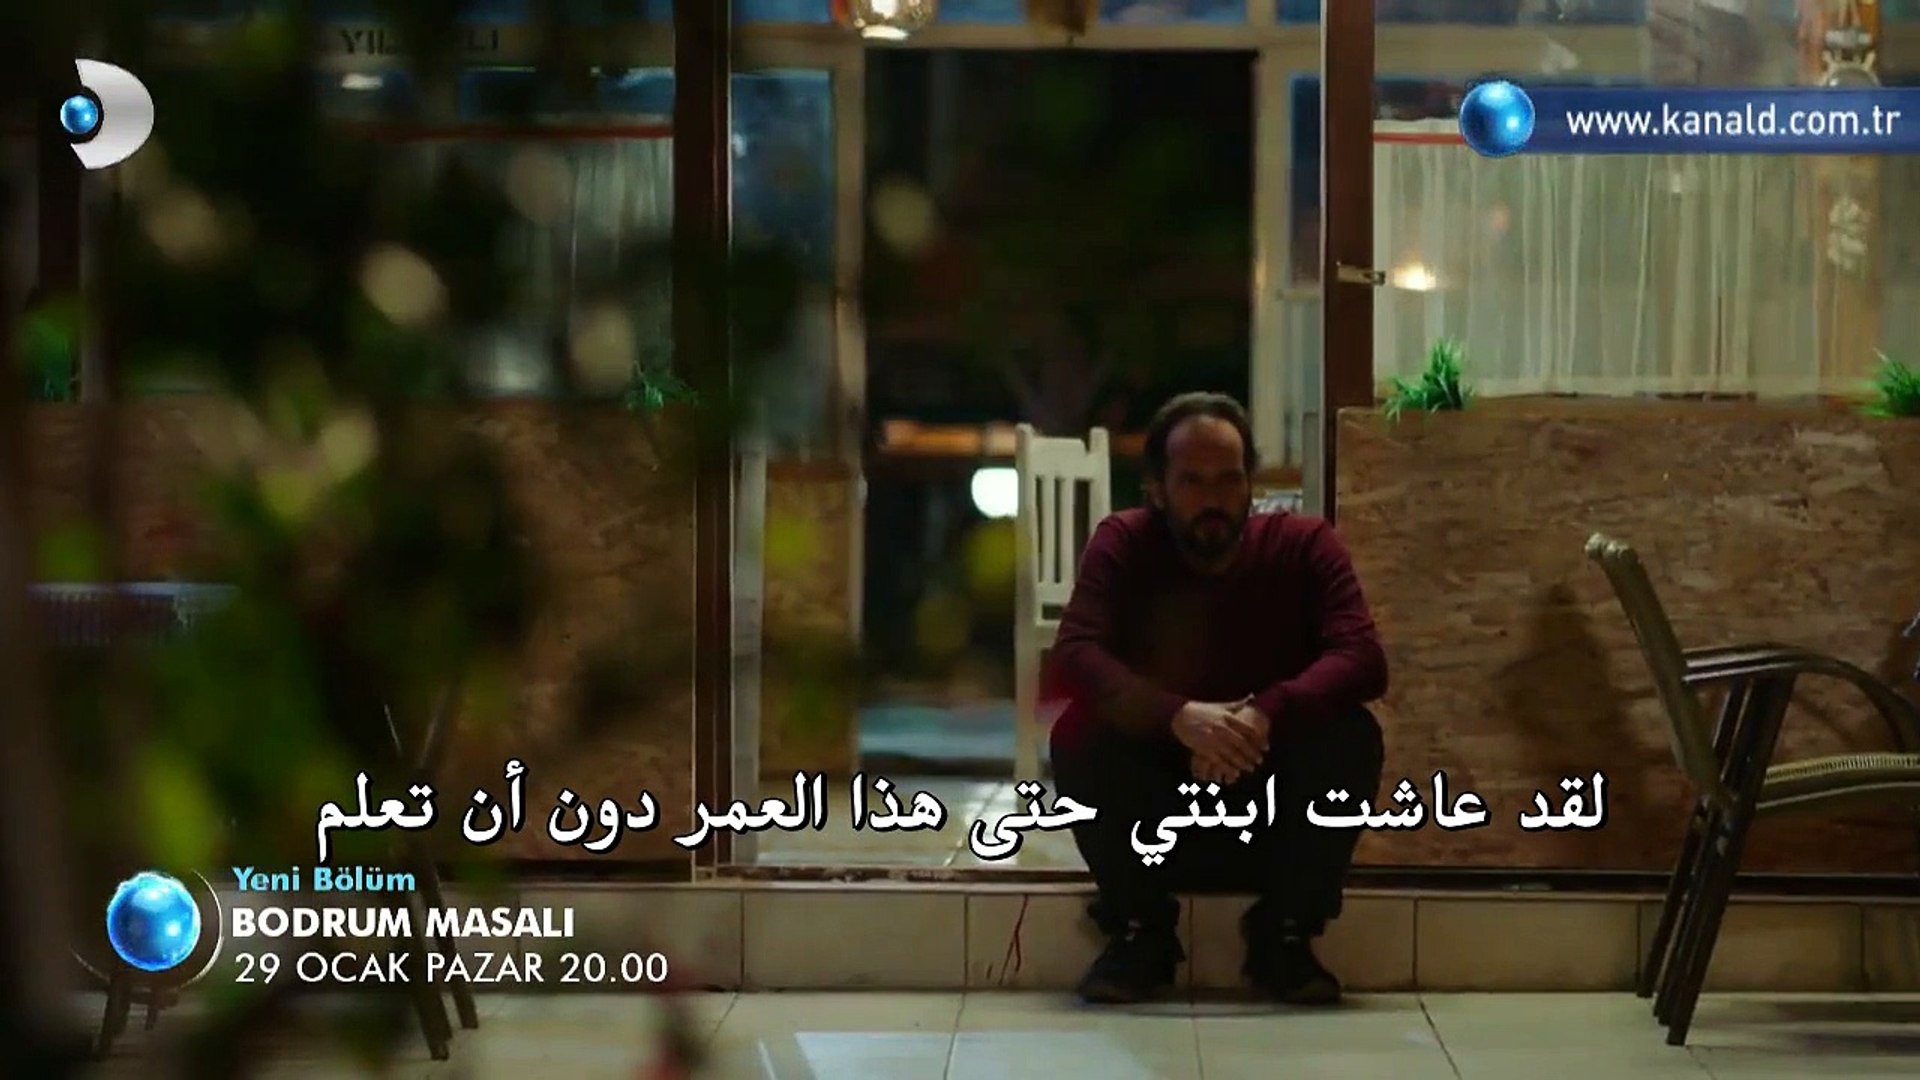 مسلسل حكاية بودروم اعلان الحلقة 21 مترجم للعربية فيديو Dailymotion